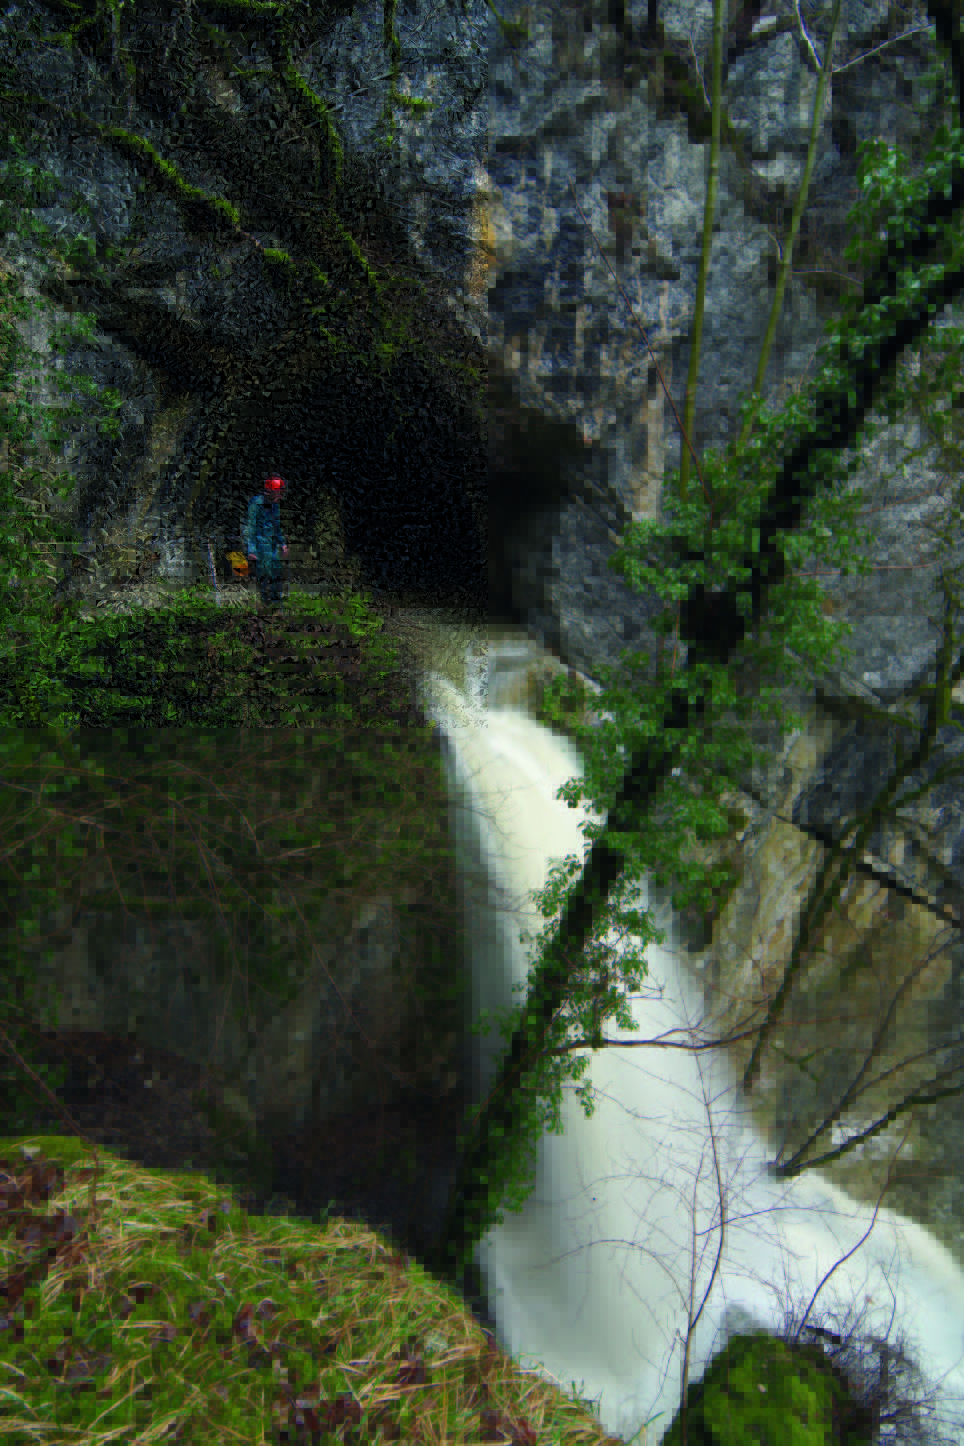 Source devenant active lorsque le niveau d'eau l'atteint en crue.

Photo prise au droit de la grotte des Faux-Monnayeurs (source de trop-plein du réseau du Pontet) (source : Guy Decreuse)
Site du photographe : https://www.flickr.com/photos/73270743@N02/